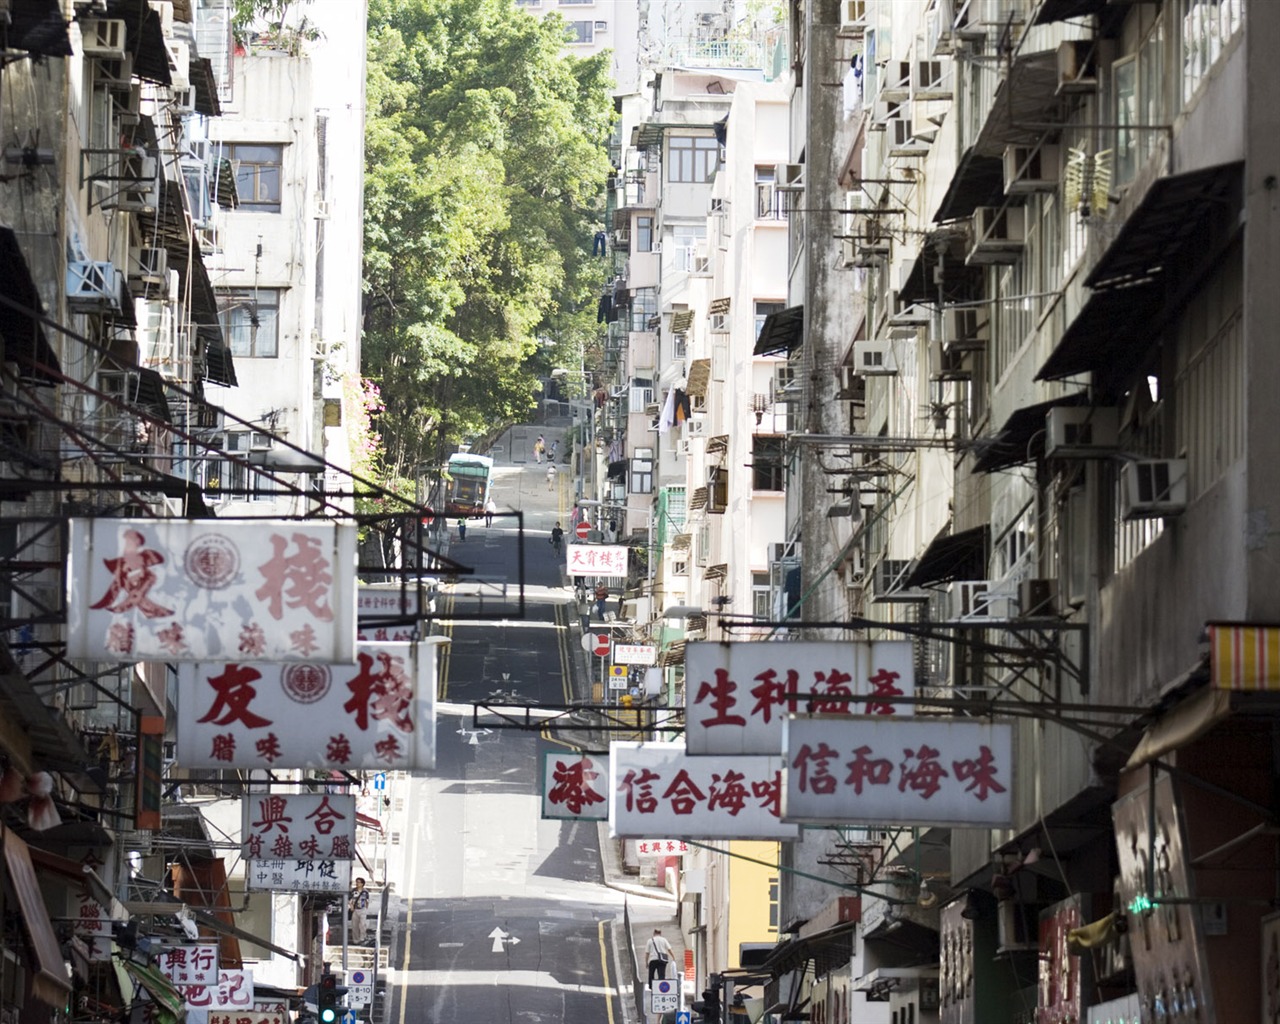 Chroniques de papier peint urbaines de la Chine #9 - 1280x1024